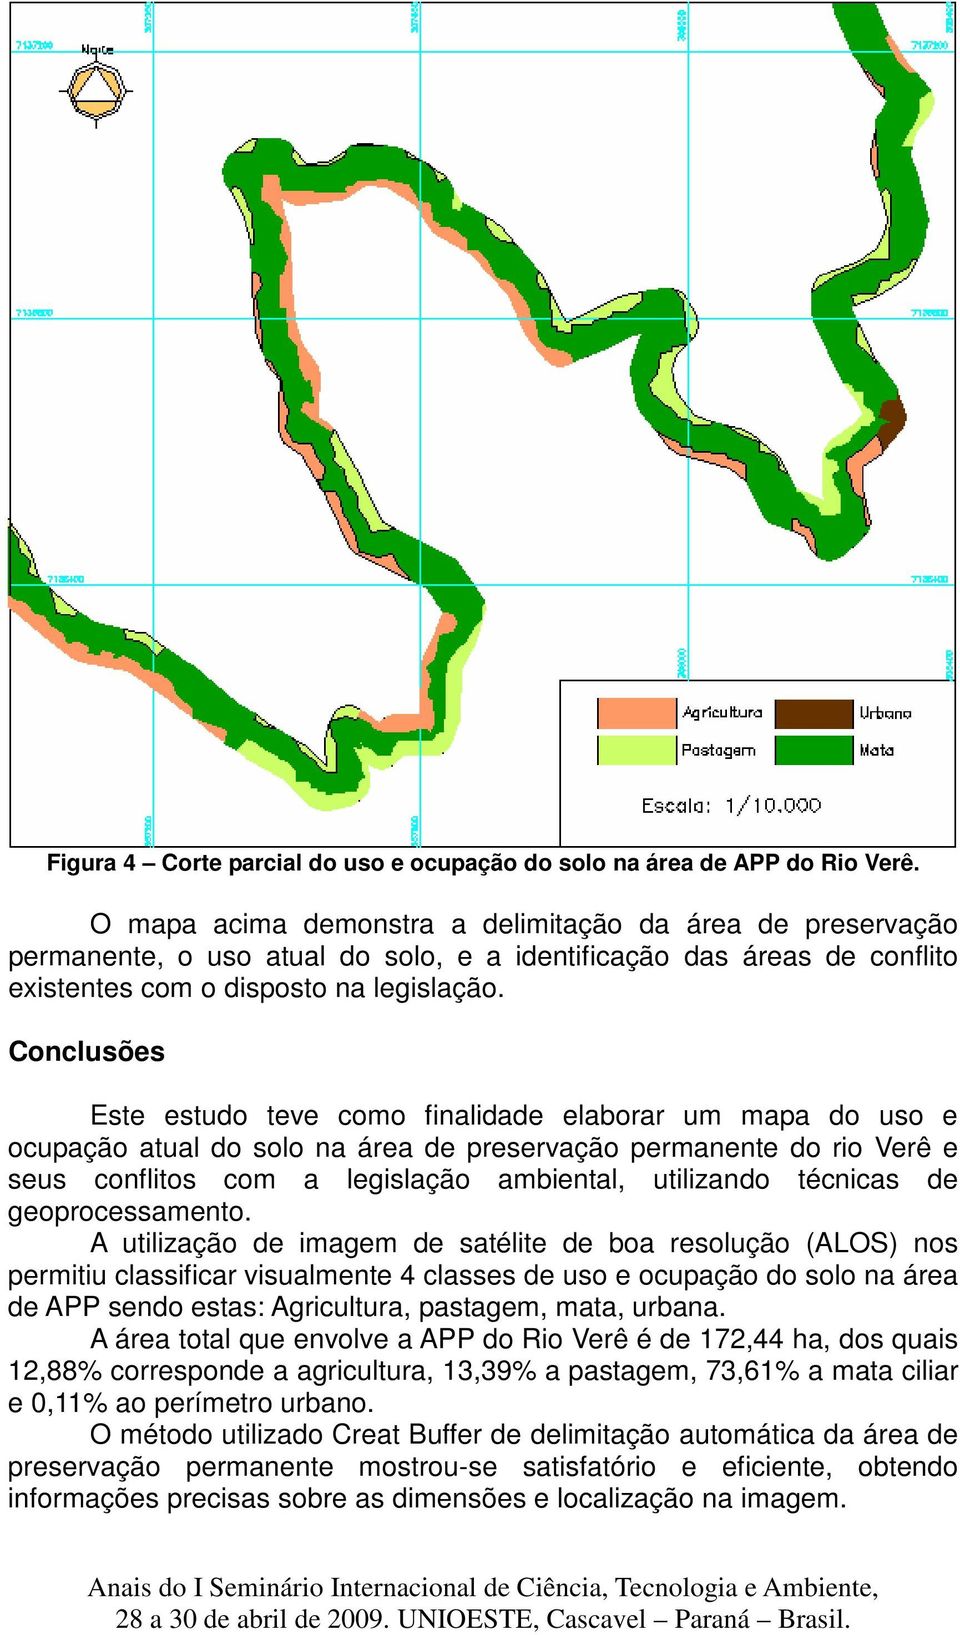 Conclusões Este estudo teve como finalidade elaborar um mapa do uso e ocupação atual do solo na área de preservação permanente do rio Verê e seus conflitos com a legislação ambiental, utilizando